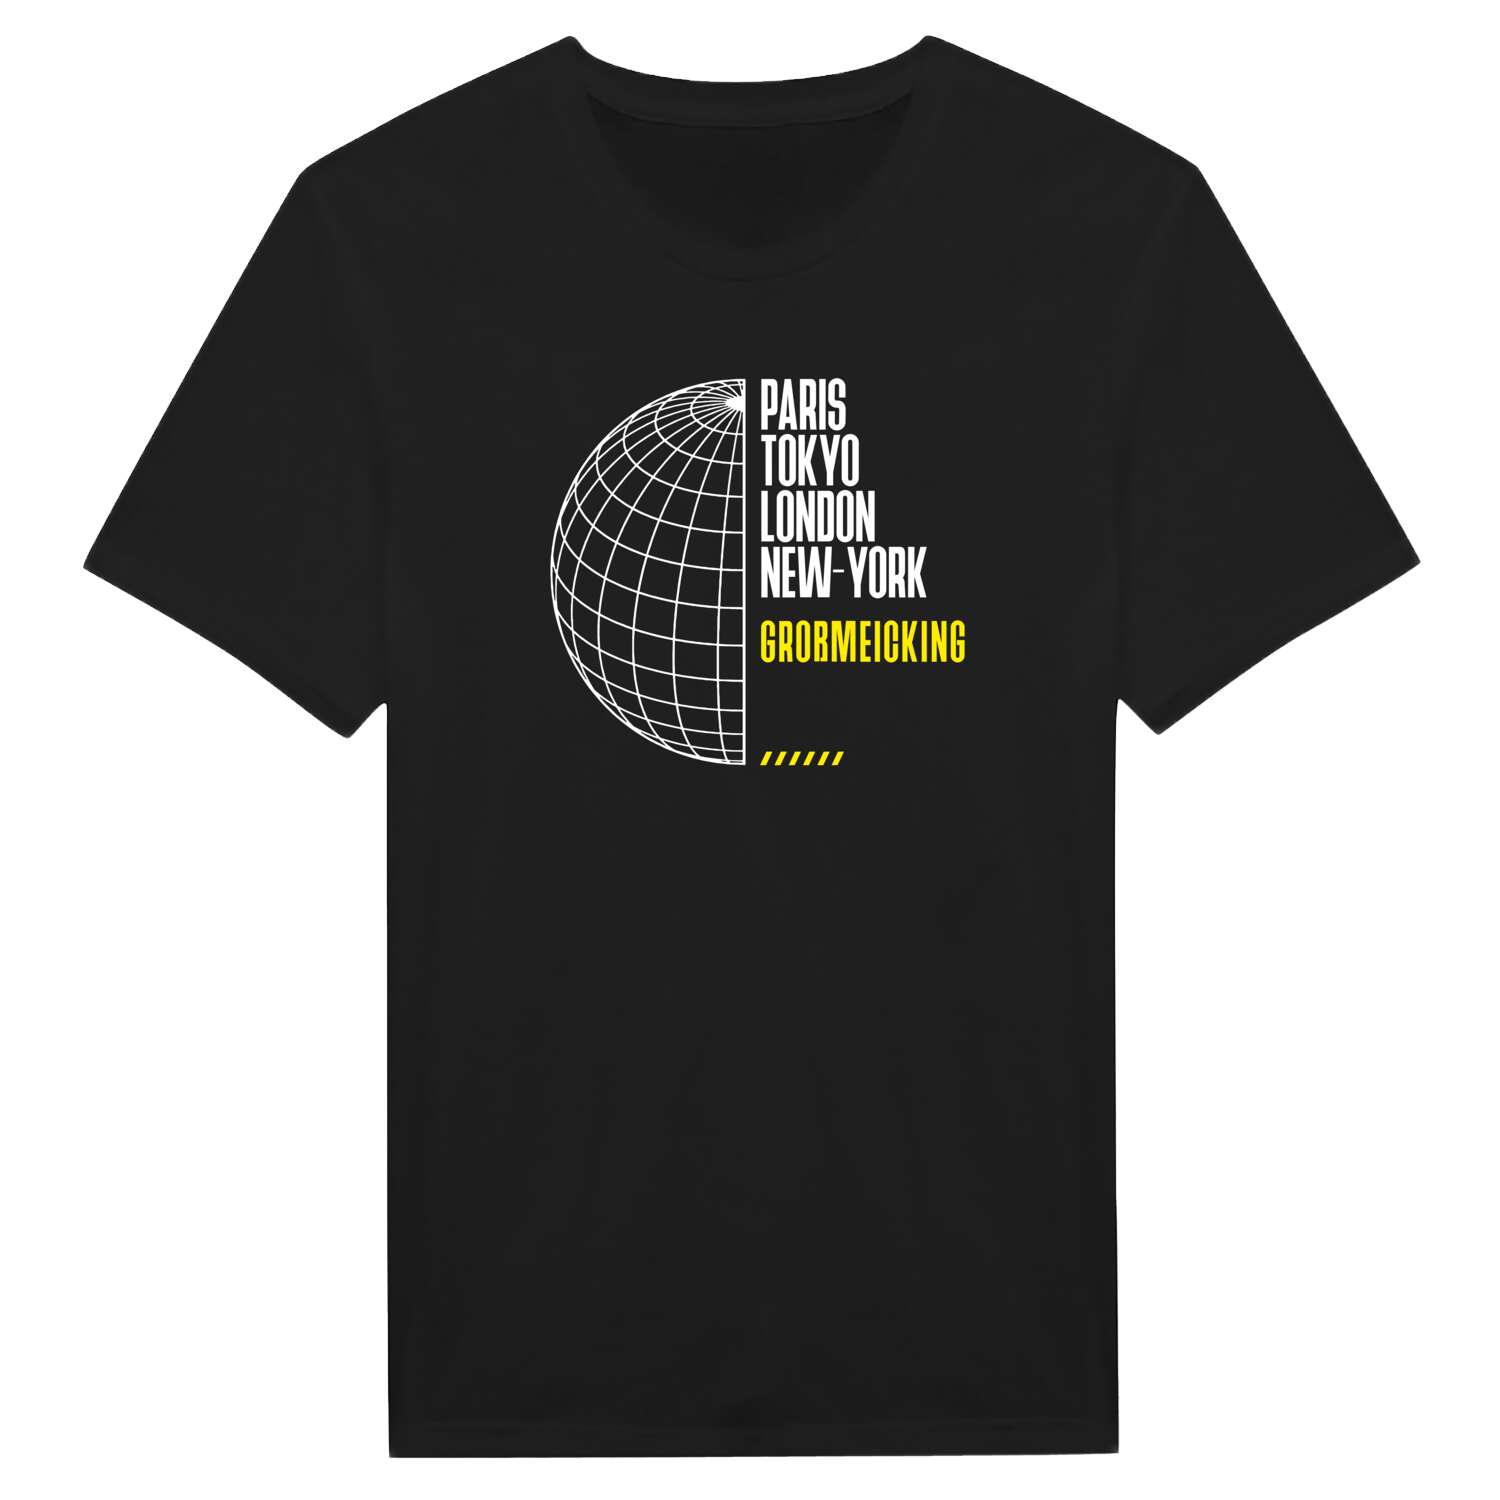 Großmeicking T-Shirt »Paris Tokyo London«